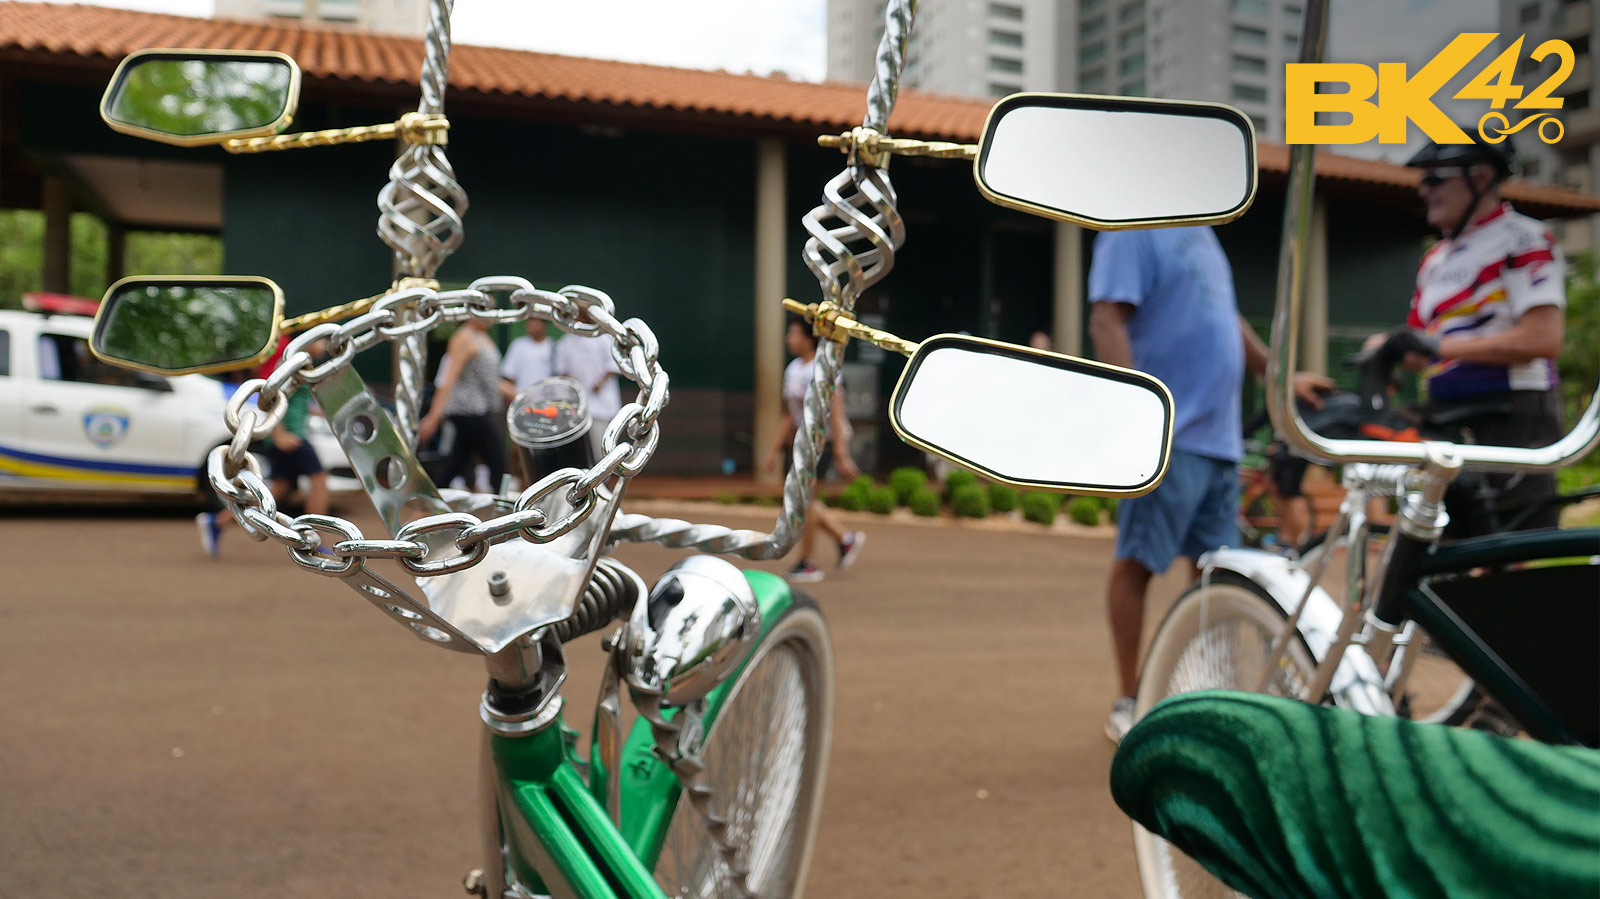 Lowrider Bikes in Brazil